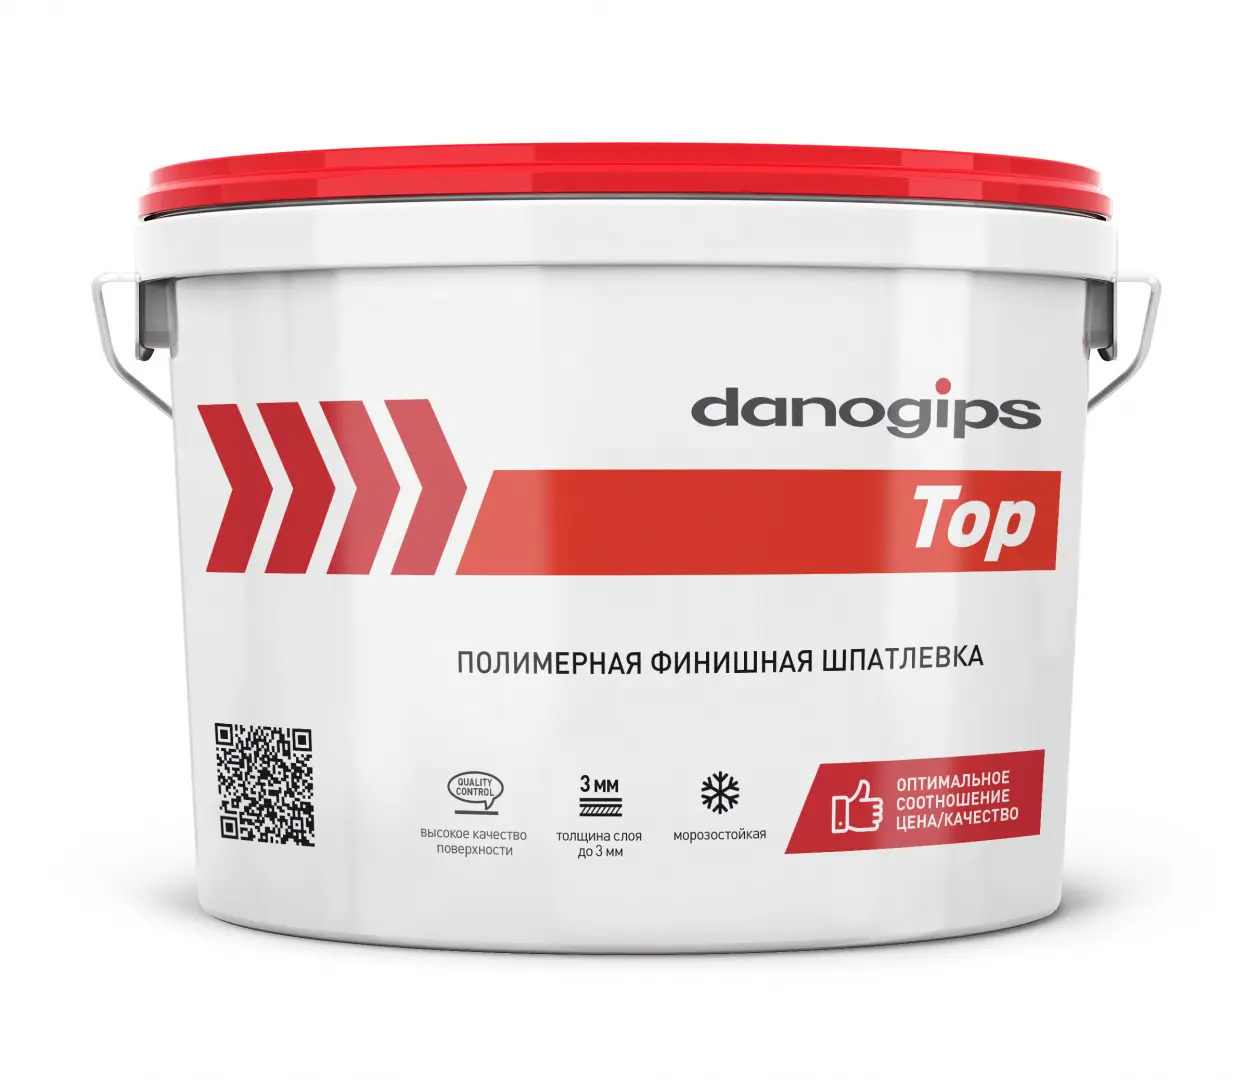 Шпатлевка Danogips DANO TOP полимерная финишная 3,5л/5кг.